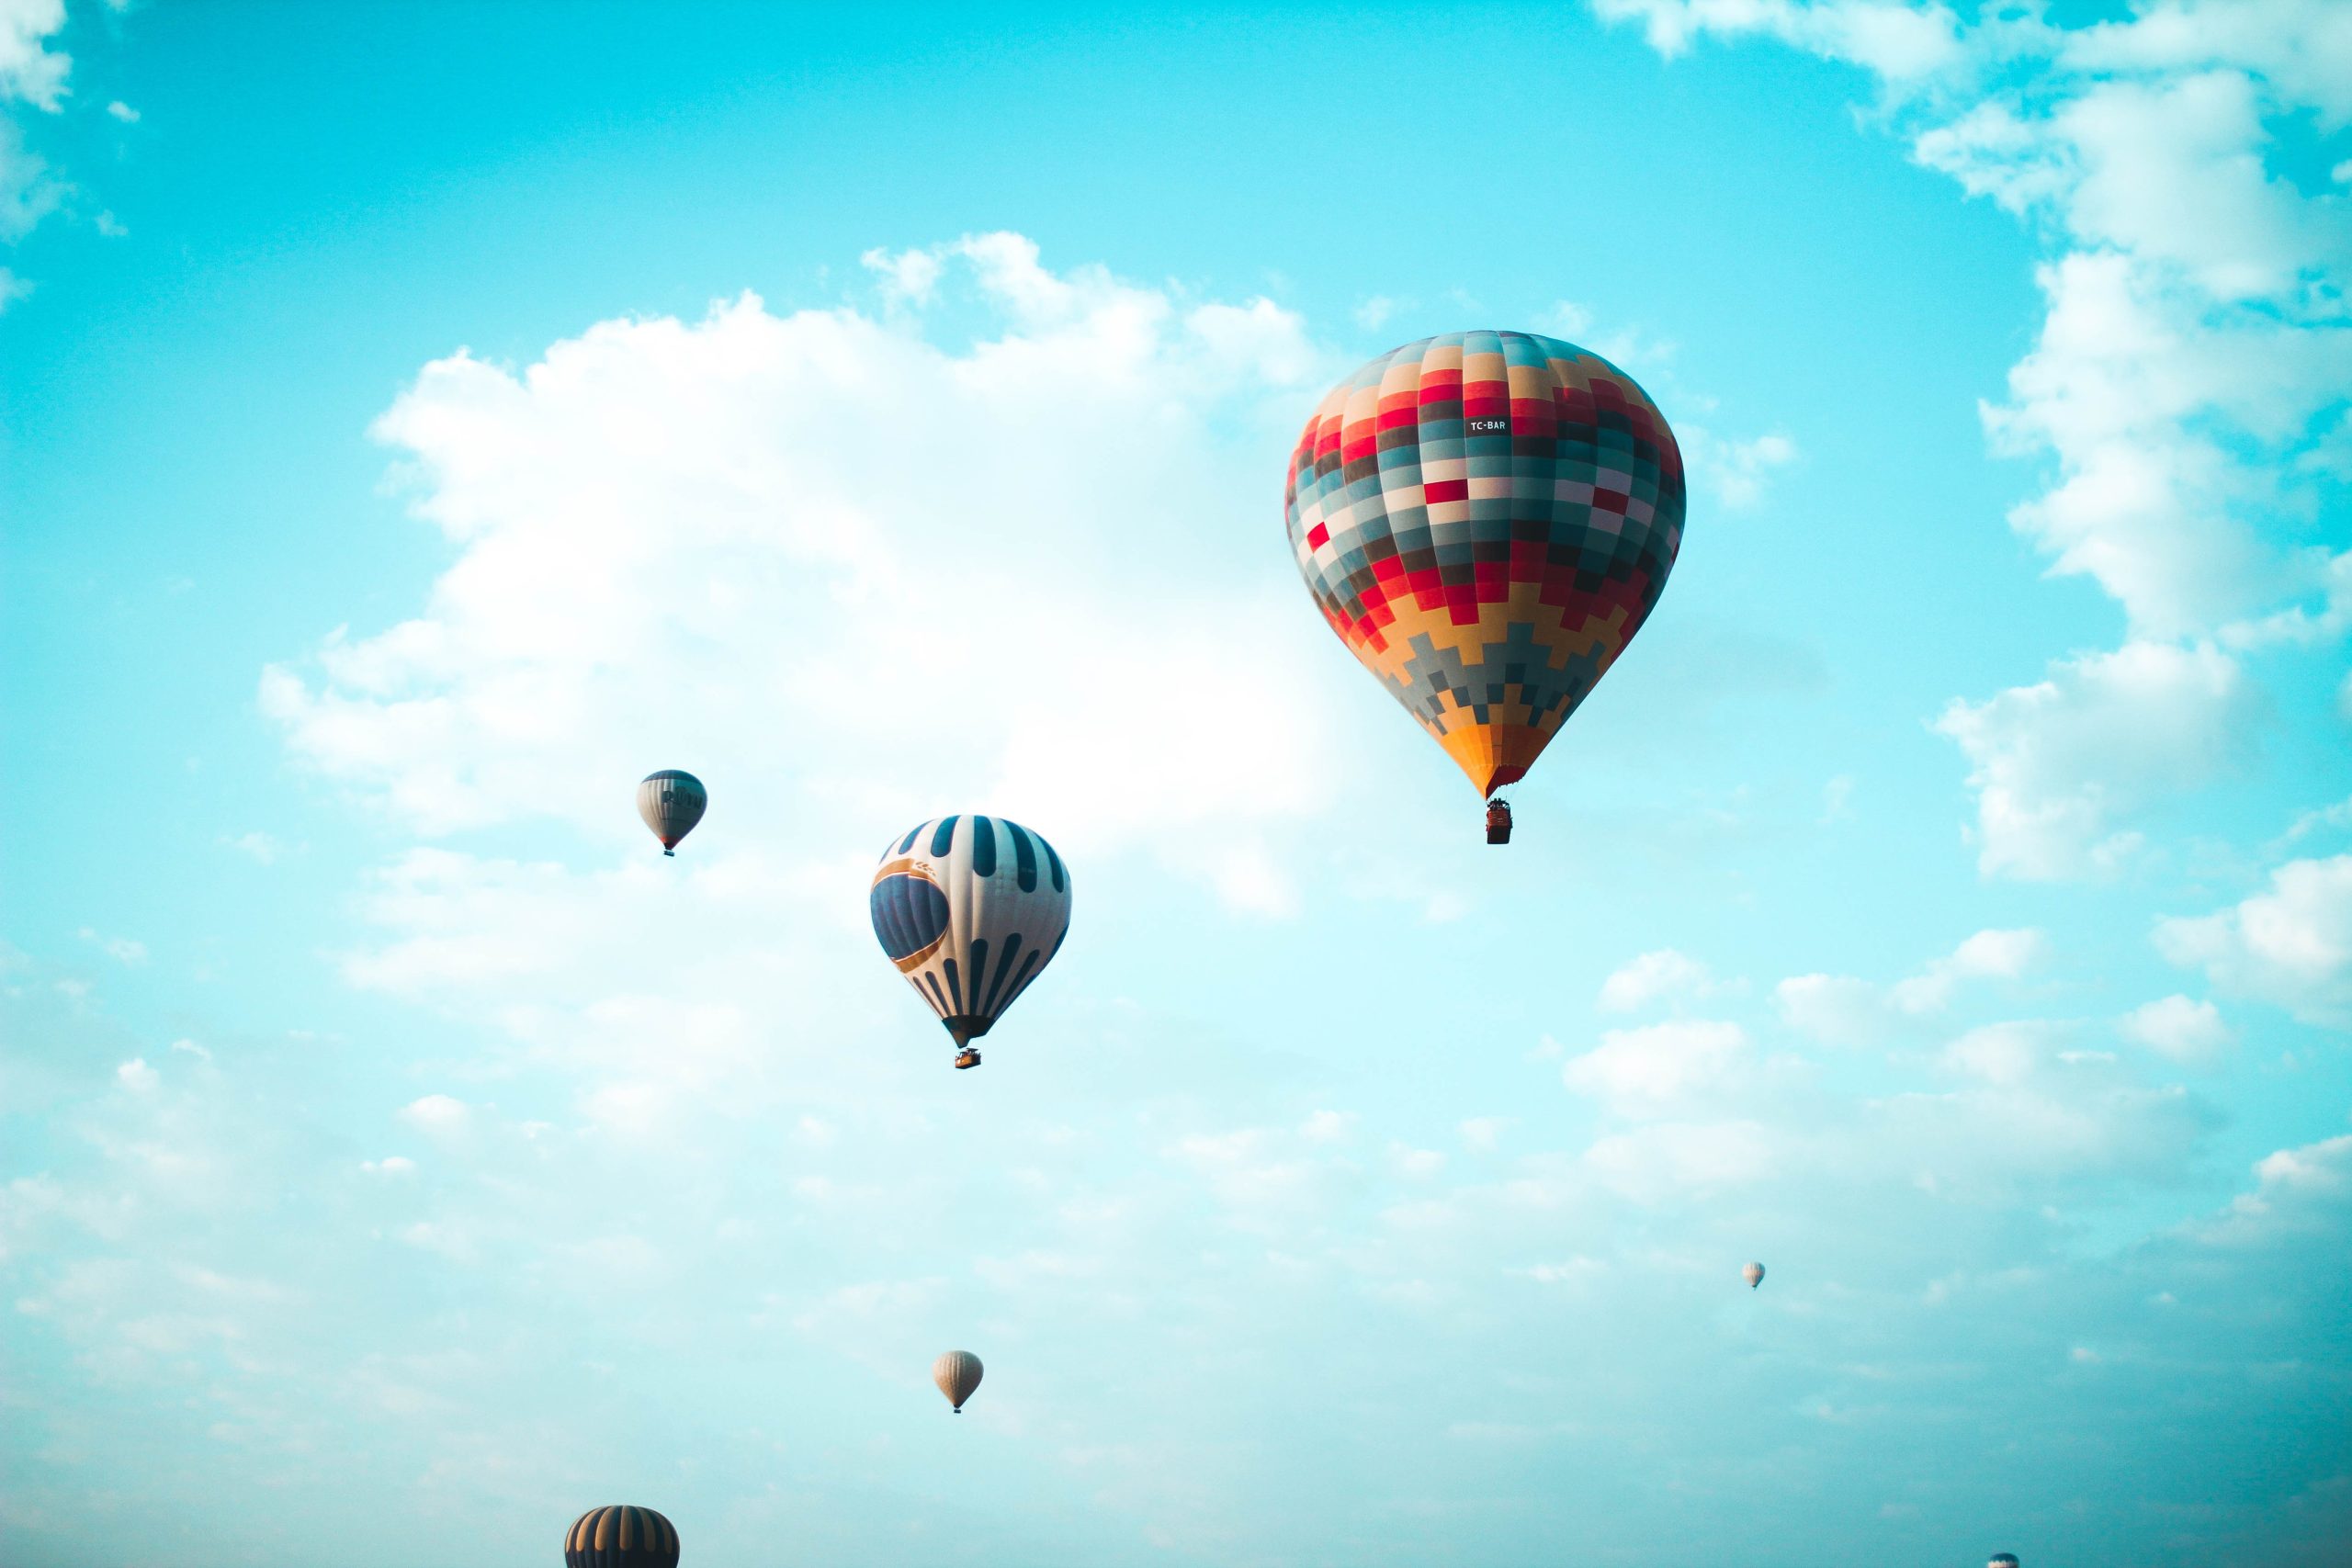 Νεκρός χειριστής αερόστατου στην Βρετανία – Πήρε φωτιά στον αέρα